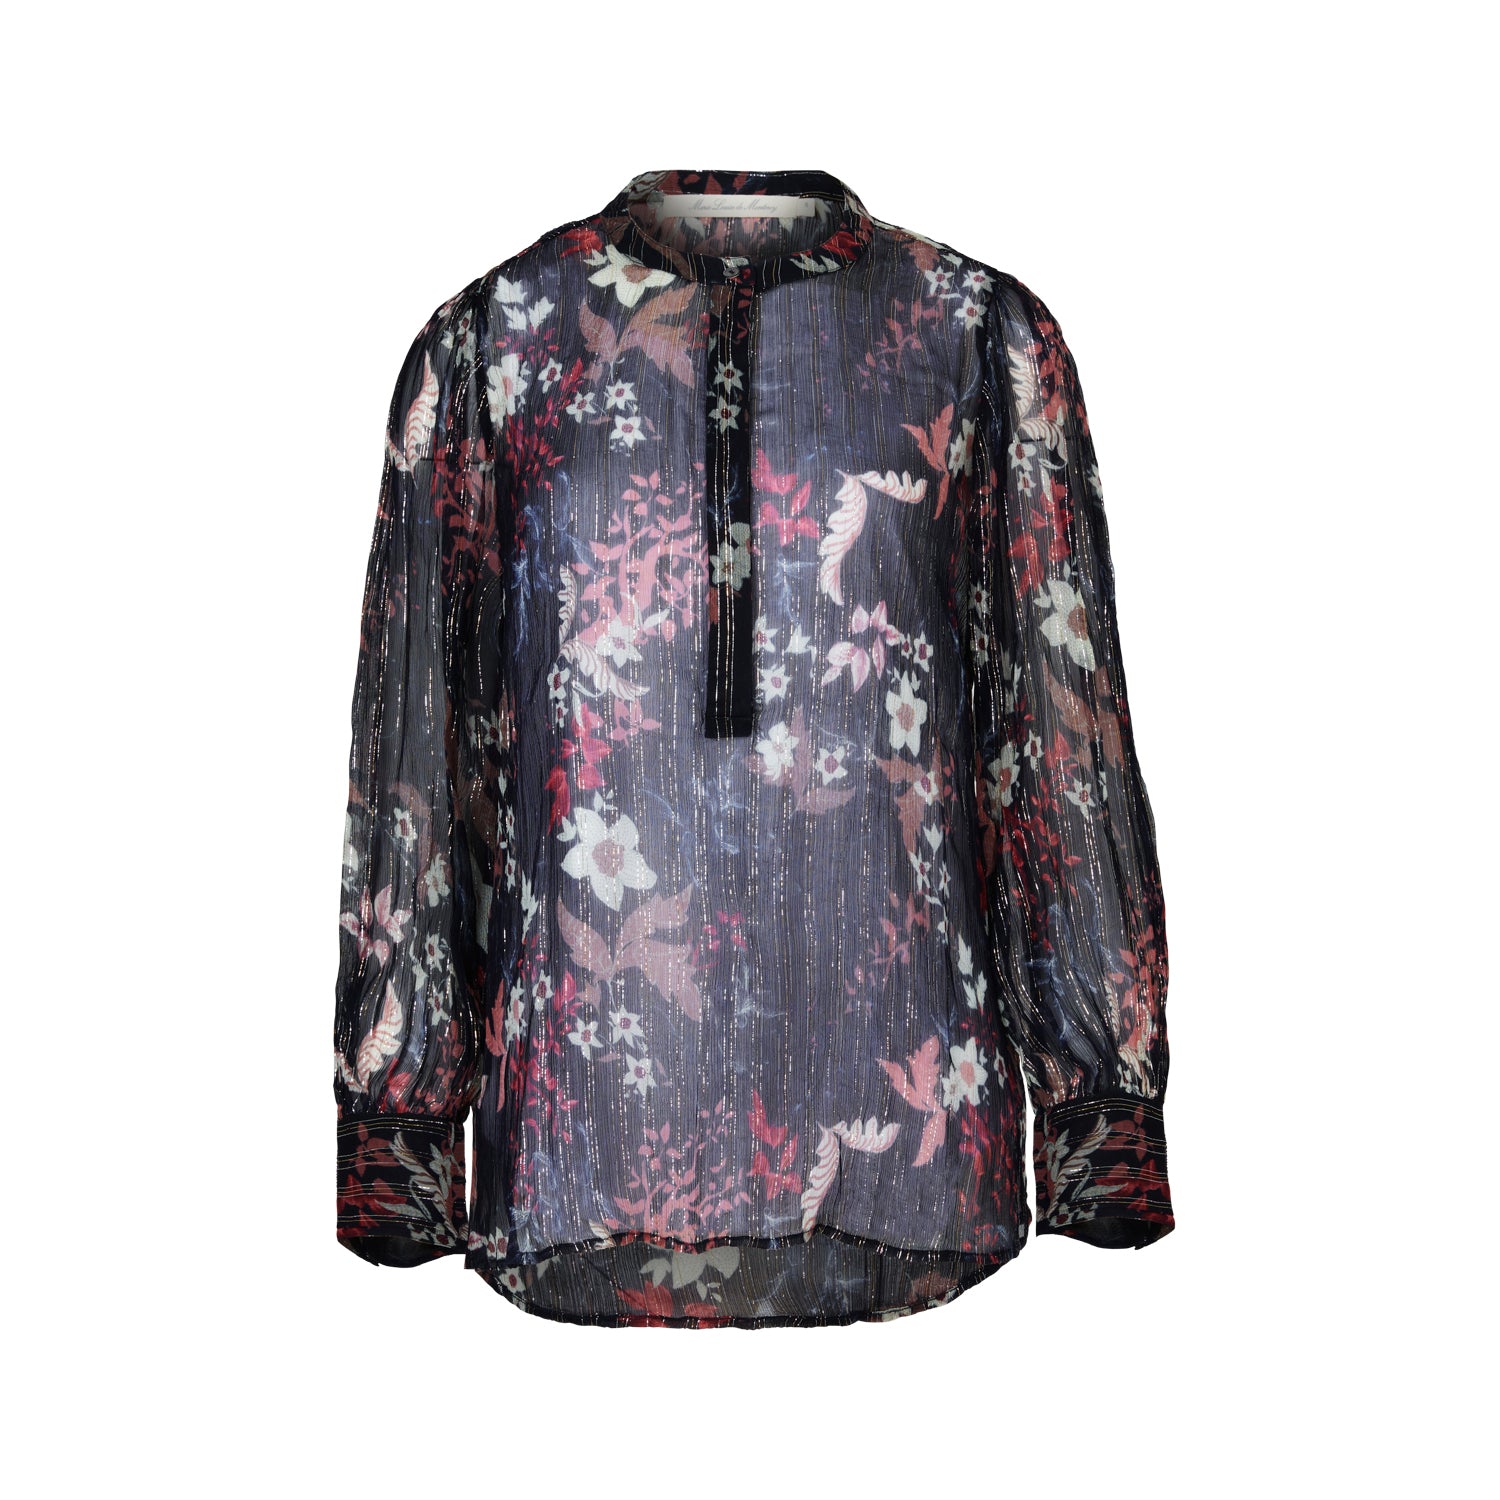 Batik Floral blouse in lurex chiffon